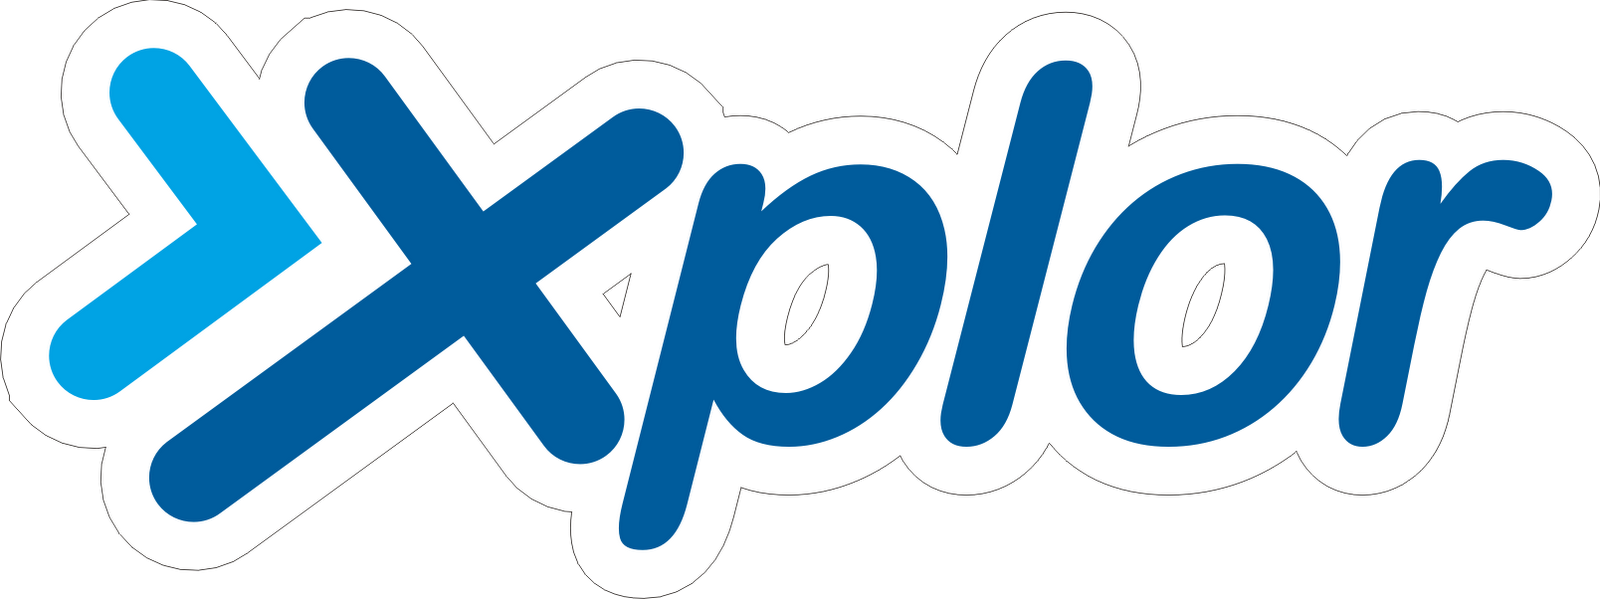 Logo XL - Kumpulan Logo Lambang Indonesia